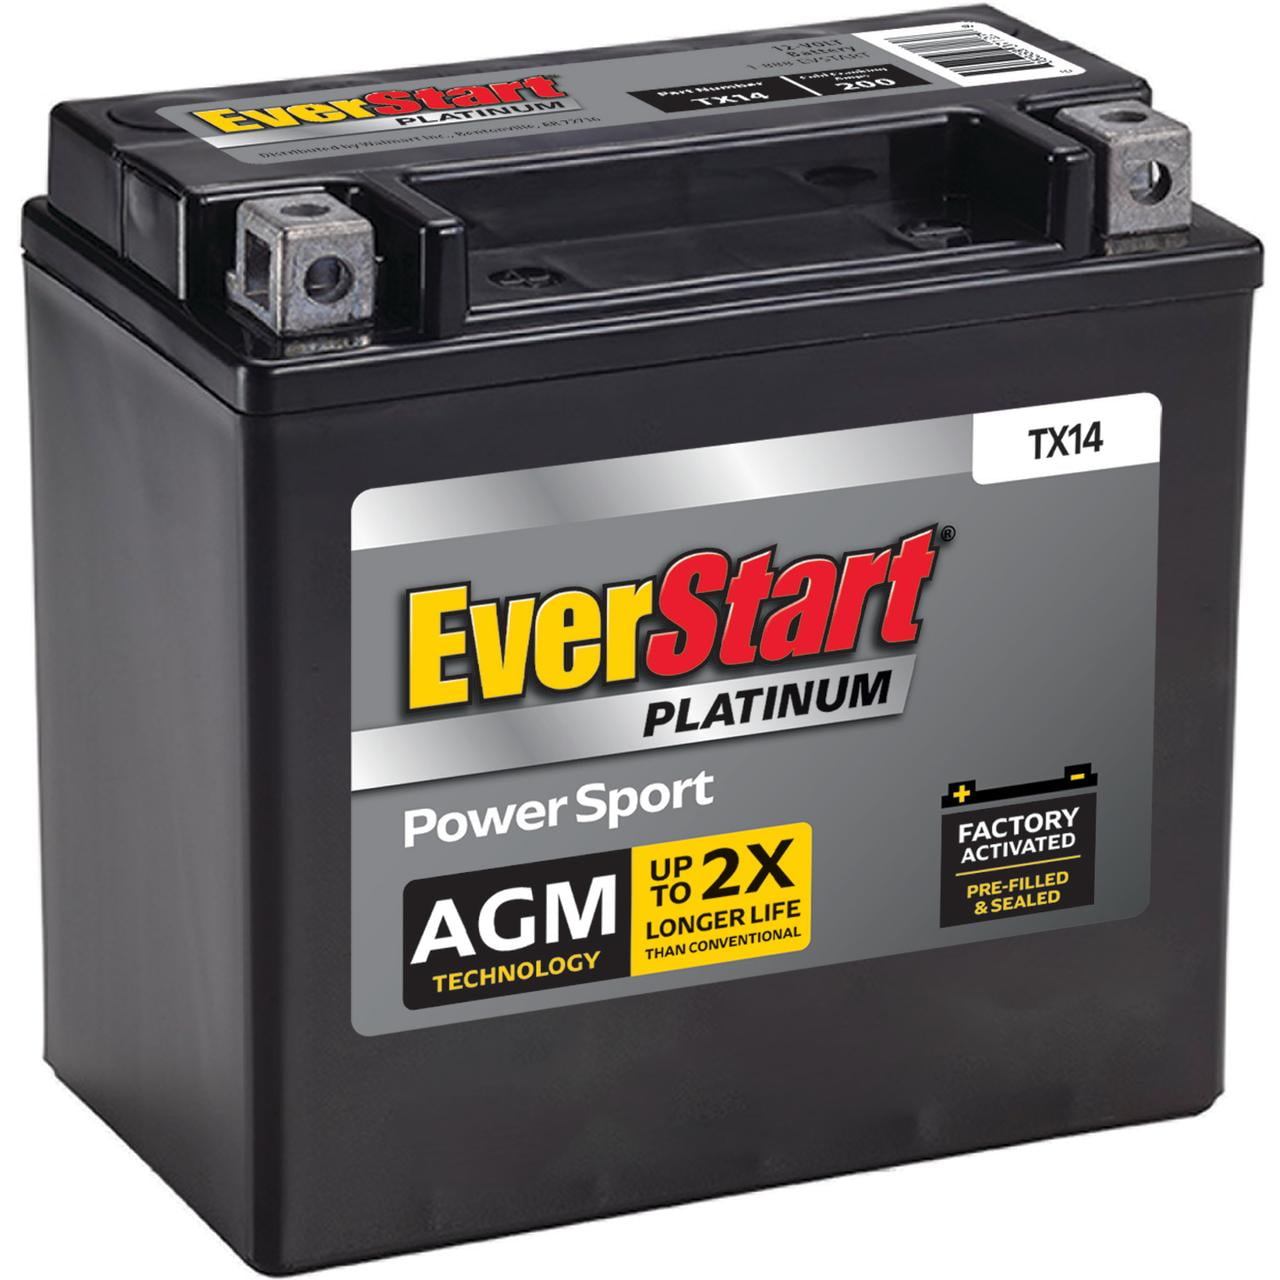 EverStart Premium AGM Power Sport Battery, Group Size TX14 12 Volt, 200 CCA